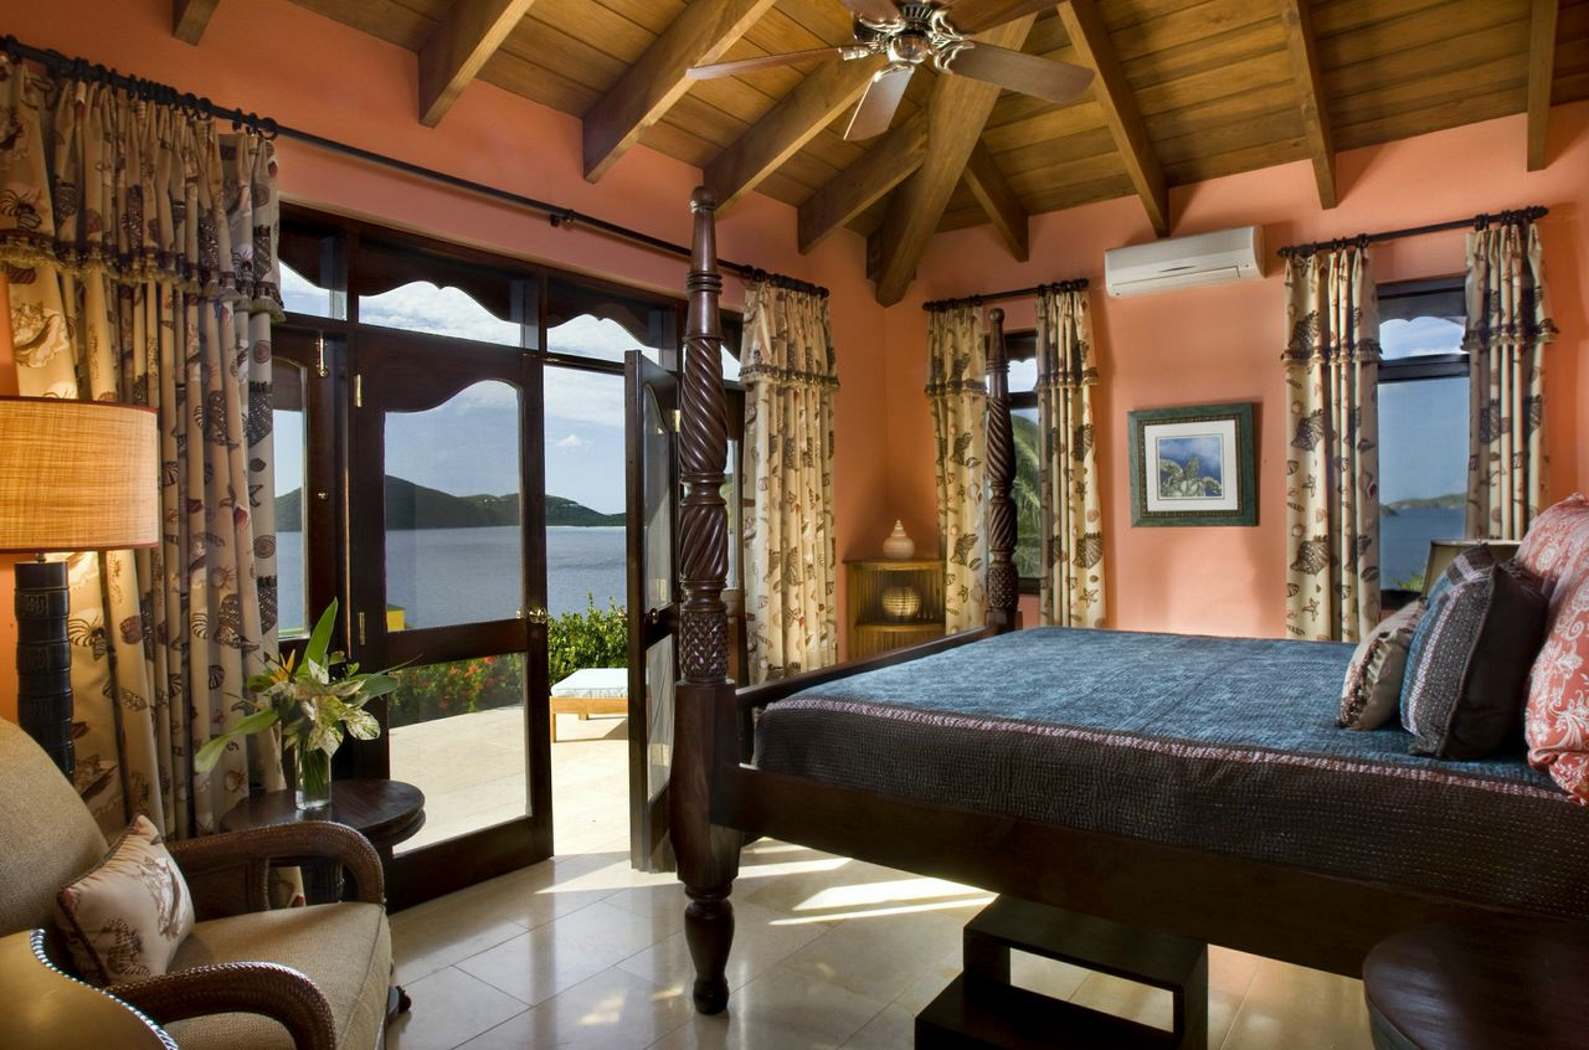 Orange double bedroom of Golden Pavillion, British Virgin Islands